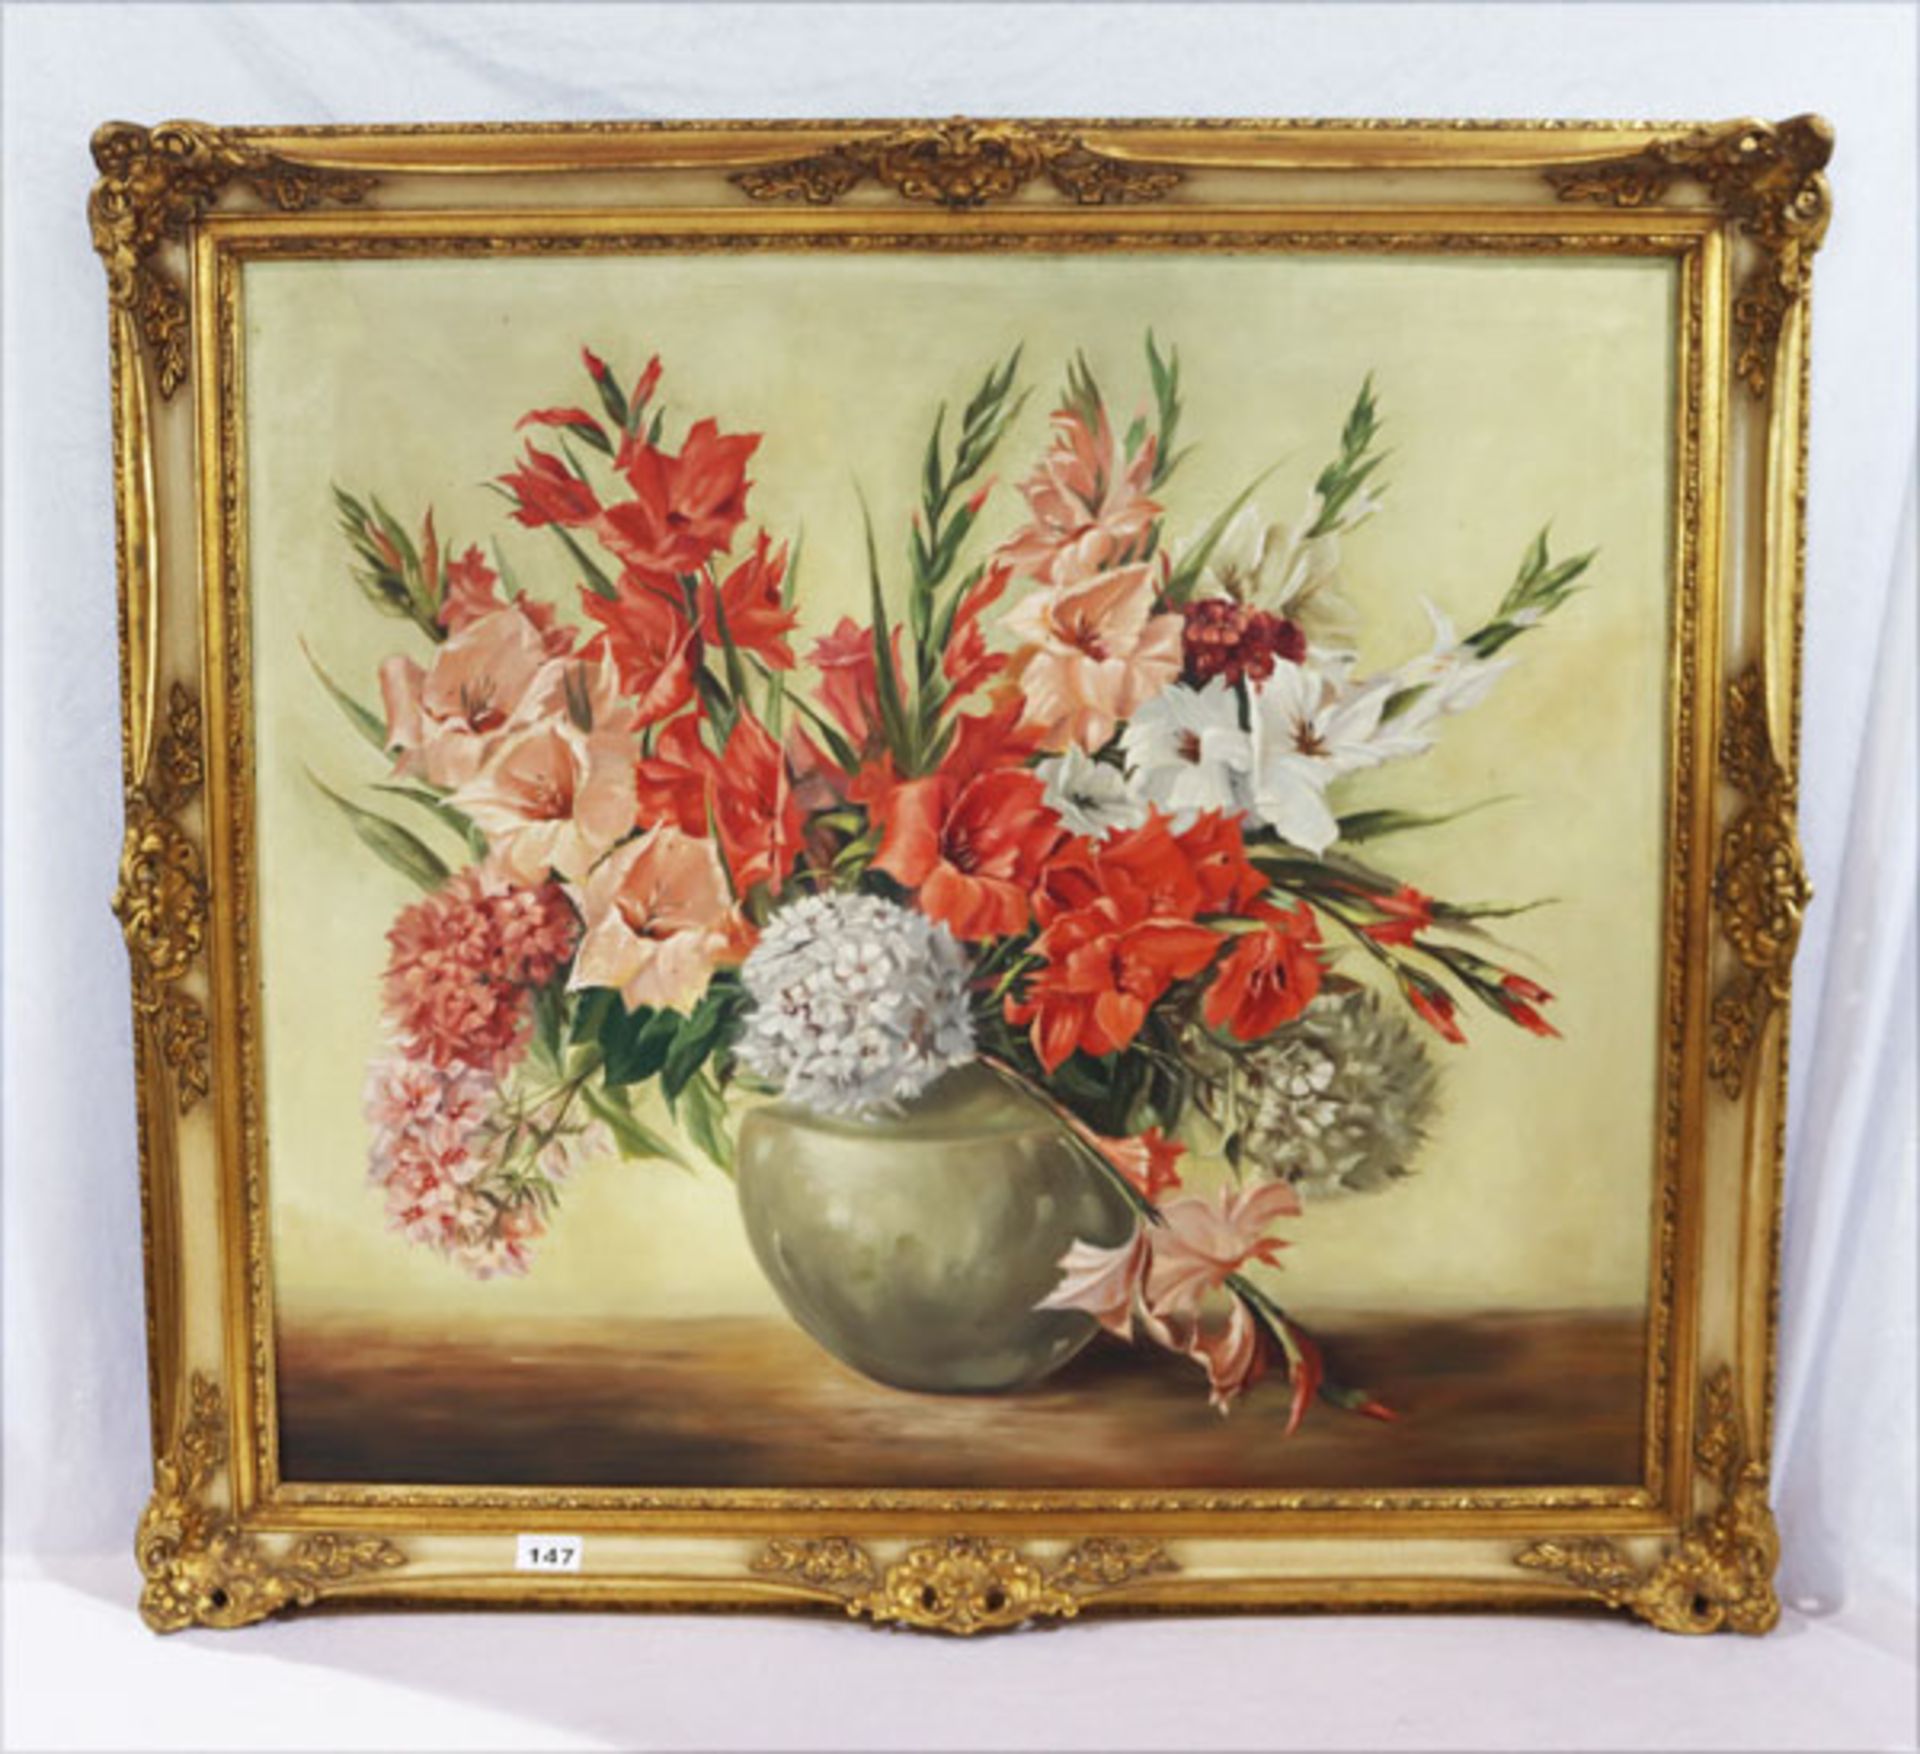 Gemälde ÖL/LW 'Sommerblumen in Vase', signiert Schöffl, nach dem Original von Schwaiger, gerahmt,